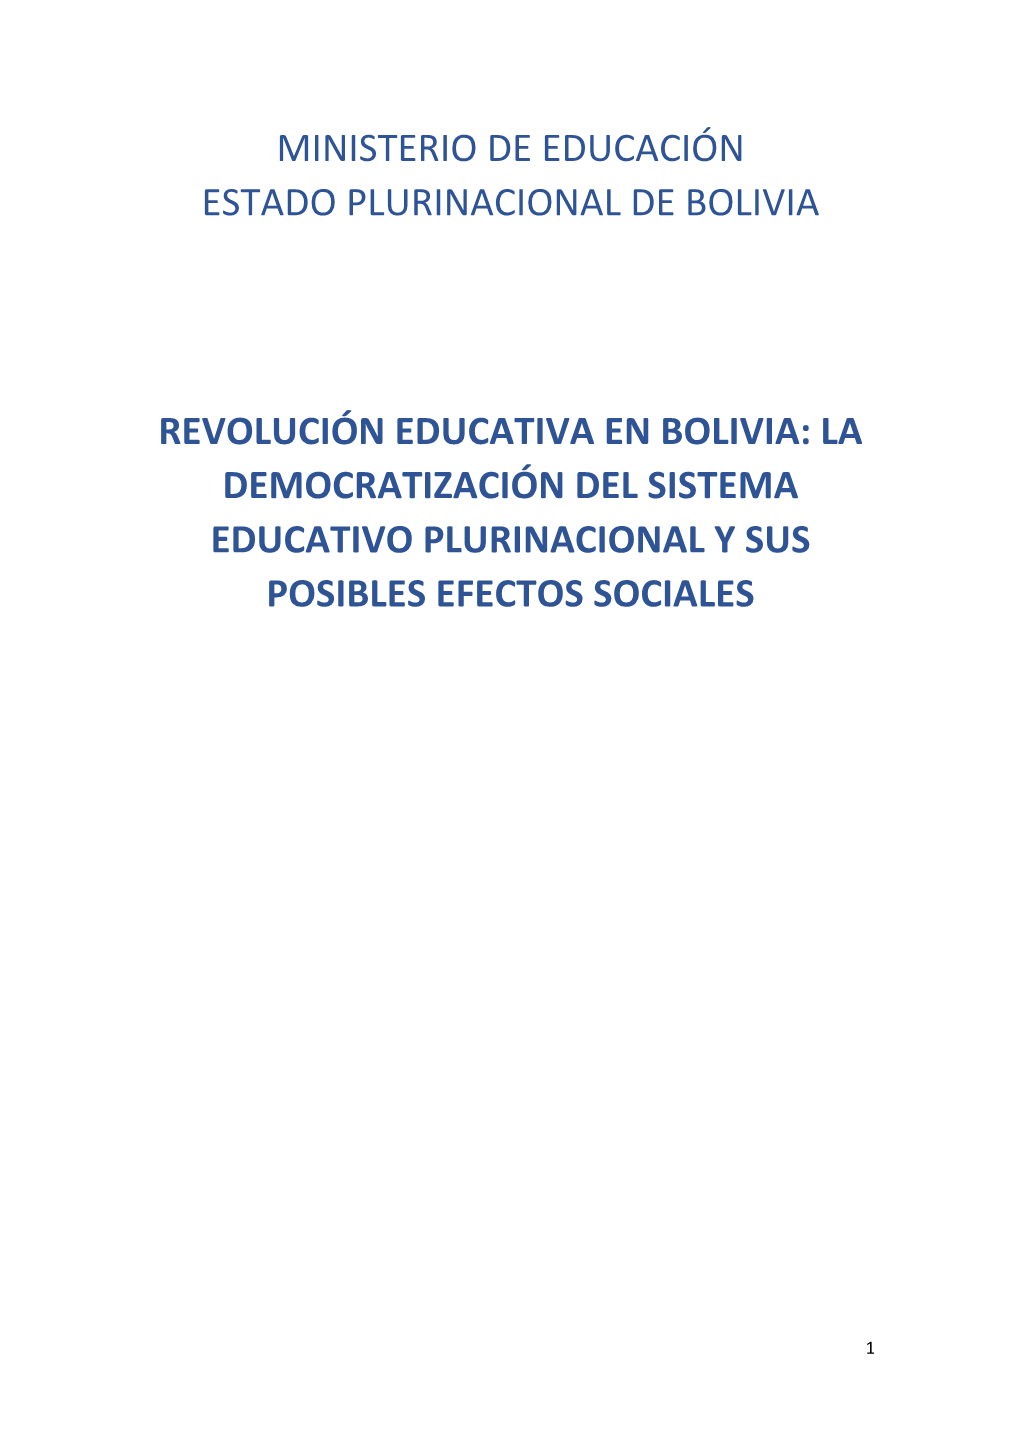 Revolución Educativa En Bolivia: La Democratización Del Sistema Educativo Plurinacional Y Sus Posibles Efectos Sociales